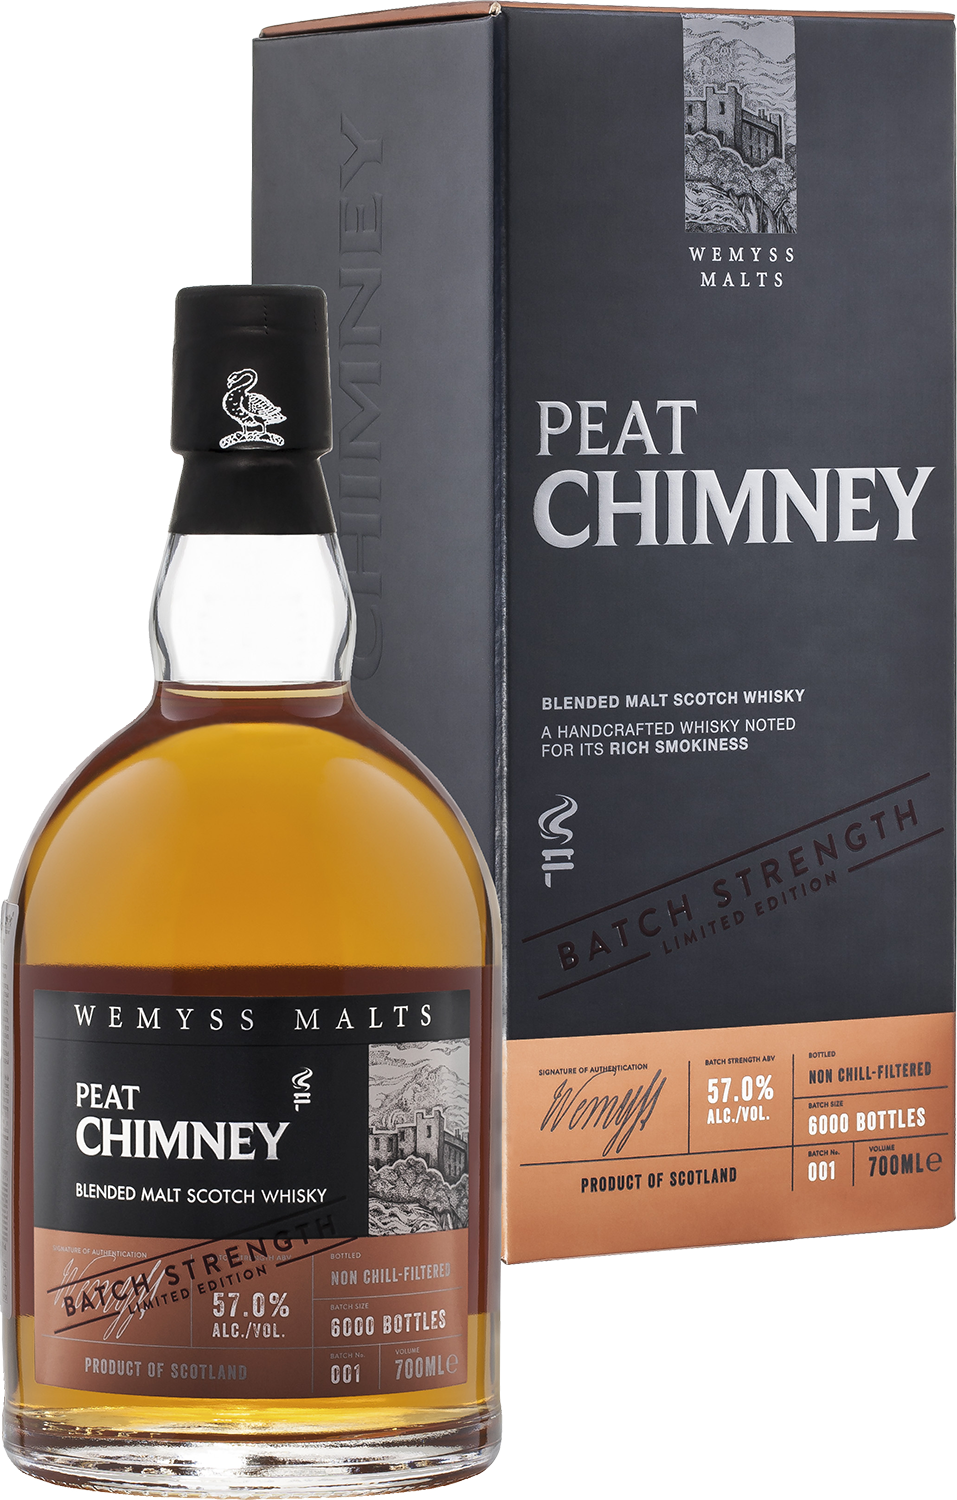 Peat Chimney Batch Strength Wemyss Malts blended malt scotch whisky wemyss malts spice king batch strength blended malt scotch whisky gift box